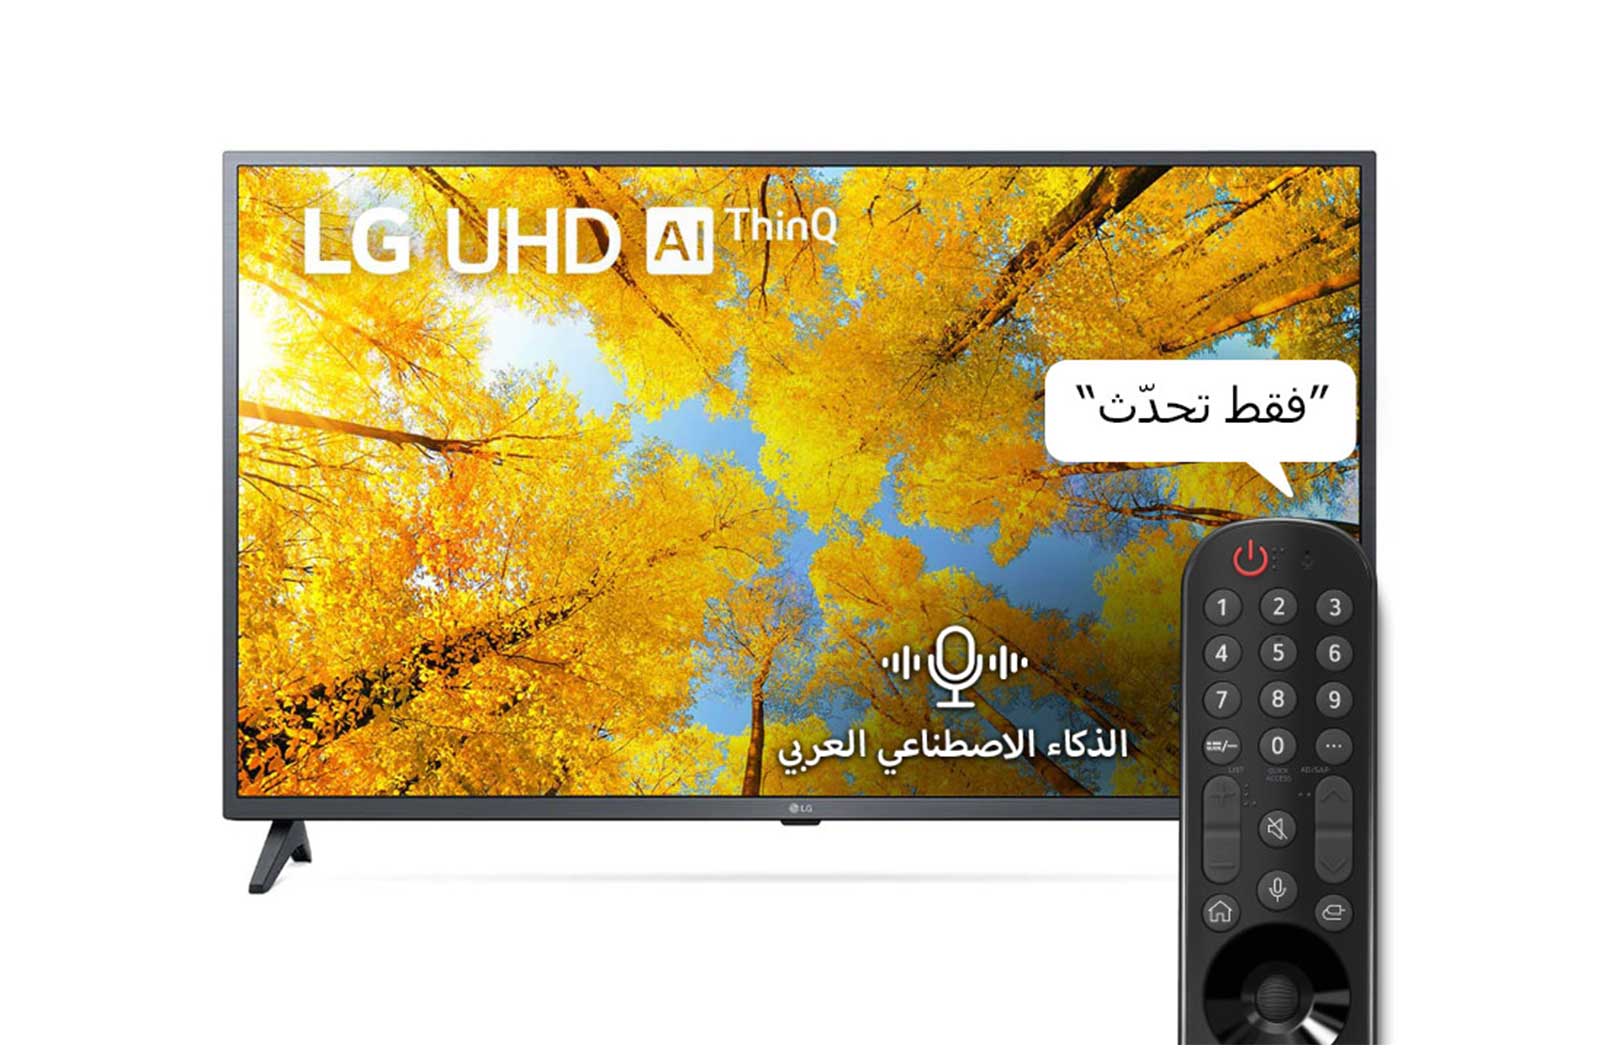 LG إل جي UHD 4K تلفاز ذكي 43 بوصة السلسة 75, معالج ألفا 5 الجيل الخامس, HDR10, HGiG., 43UQ75006LG